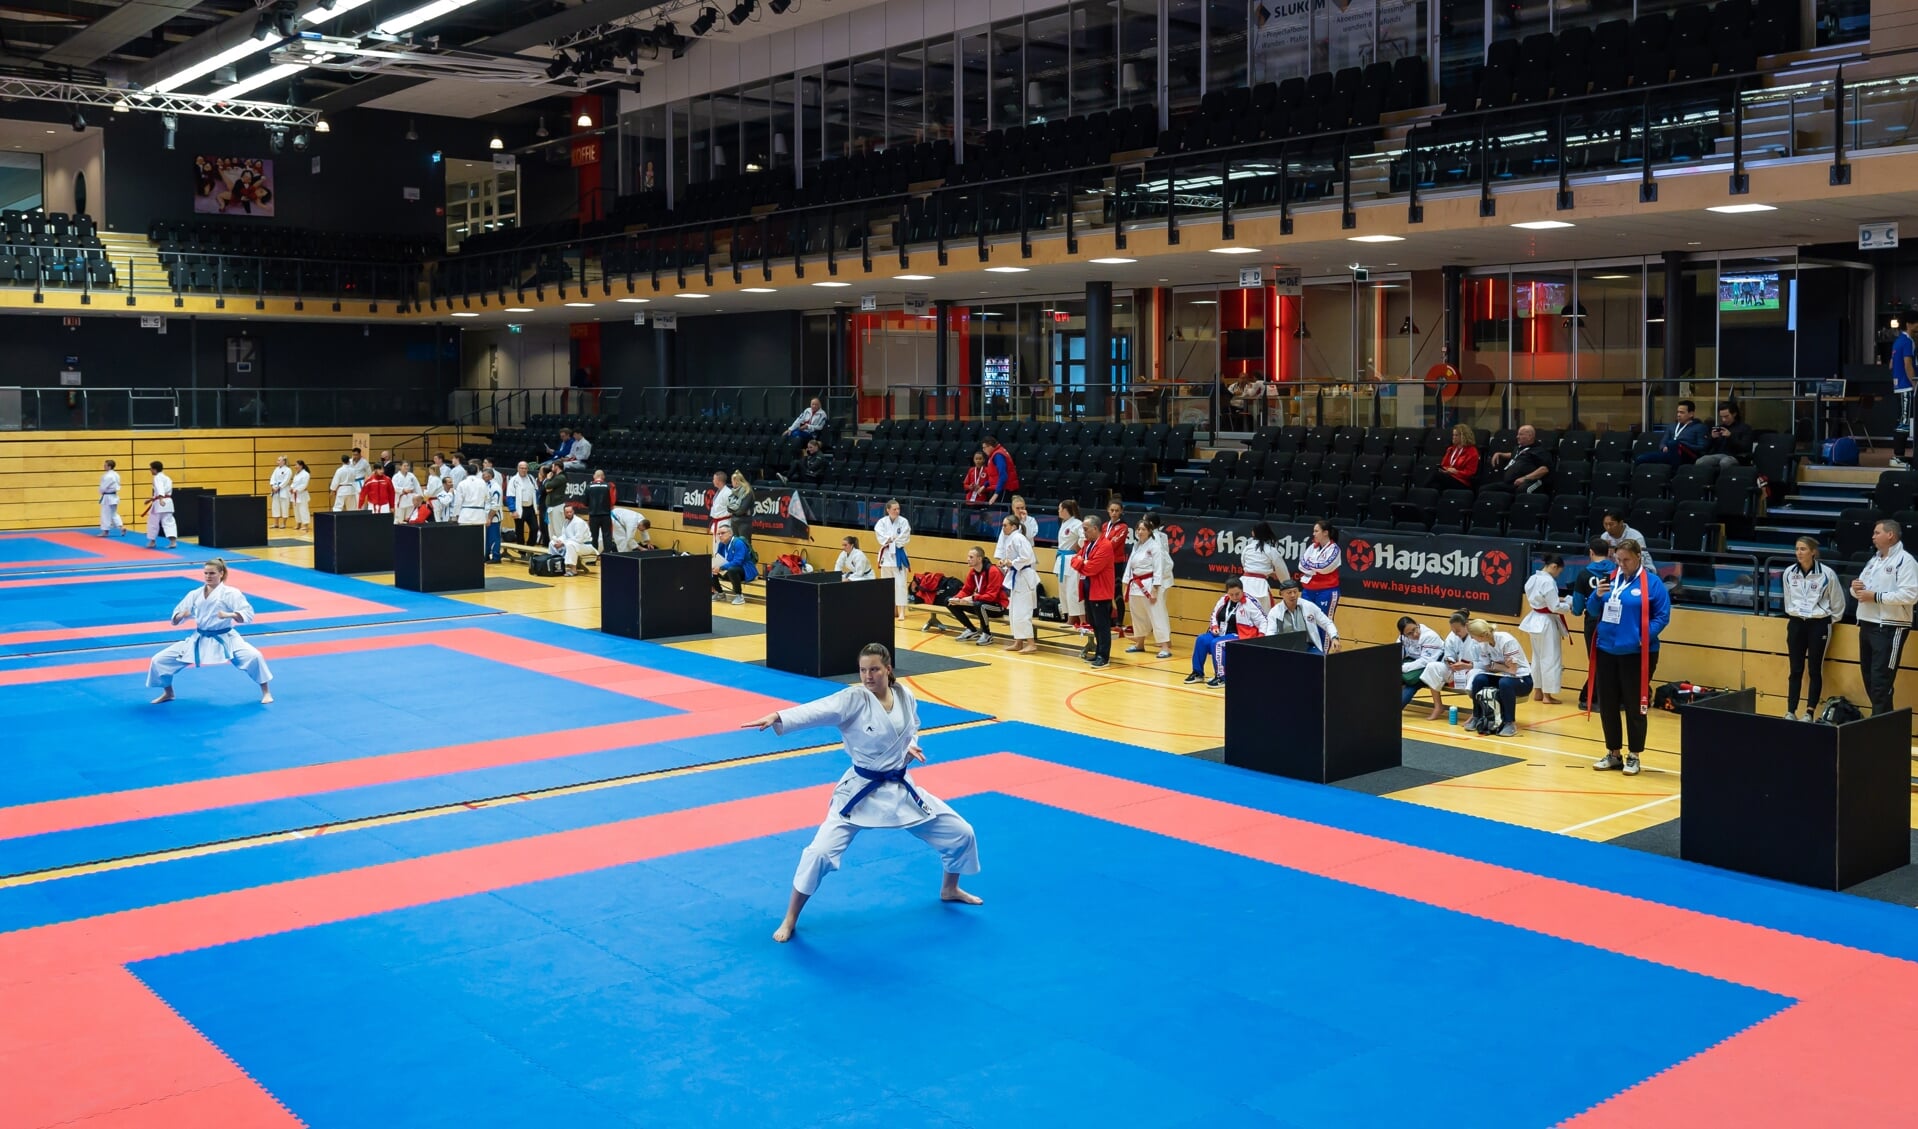 De NK Karate 2021 voor lege tribunes in het Landstede Sportcentrum.